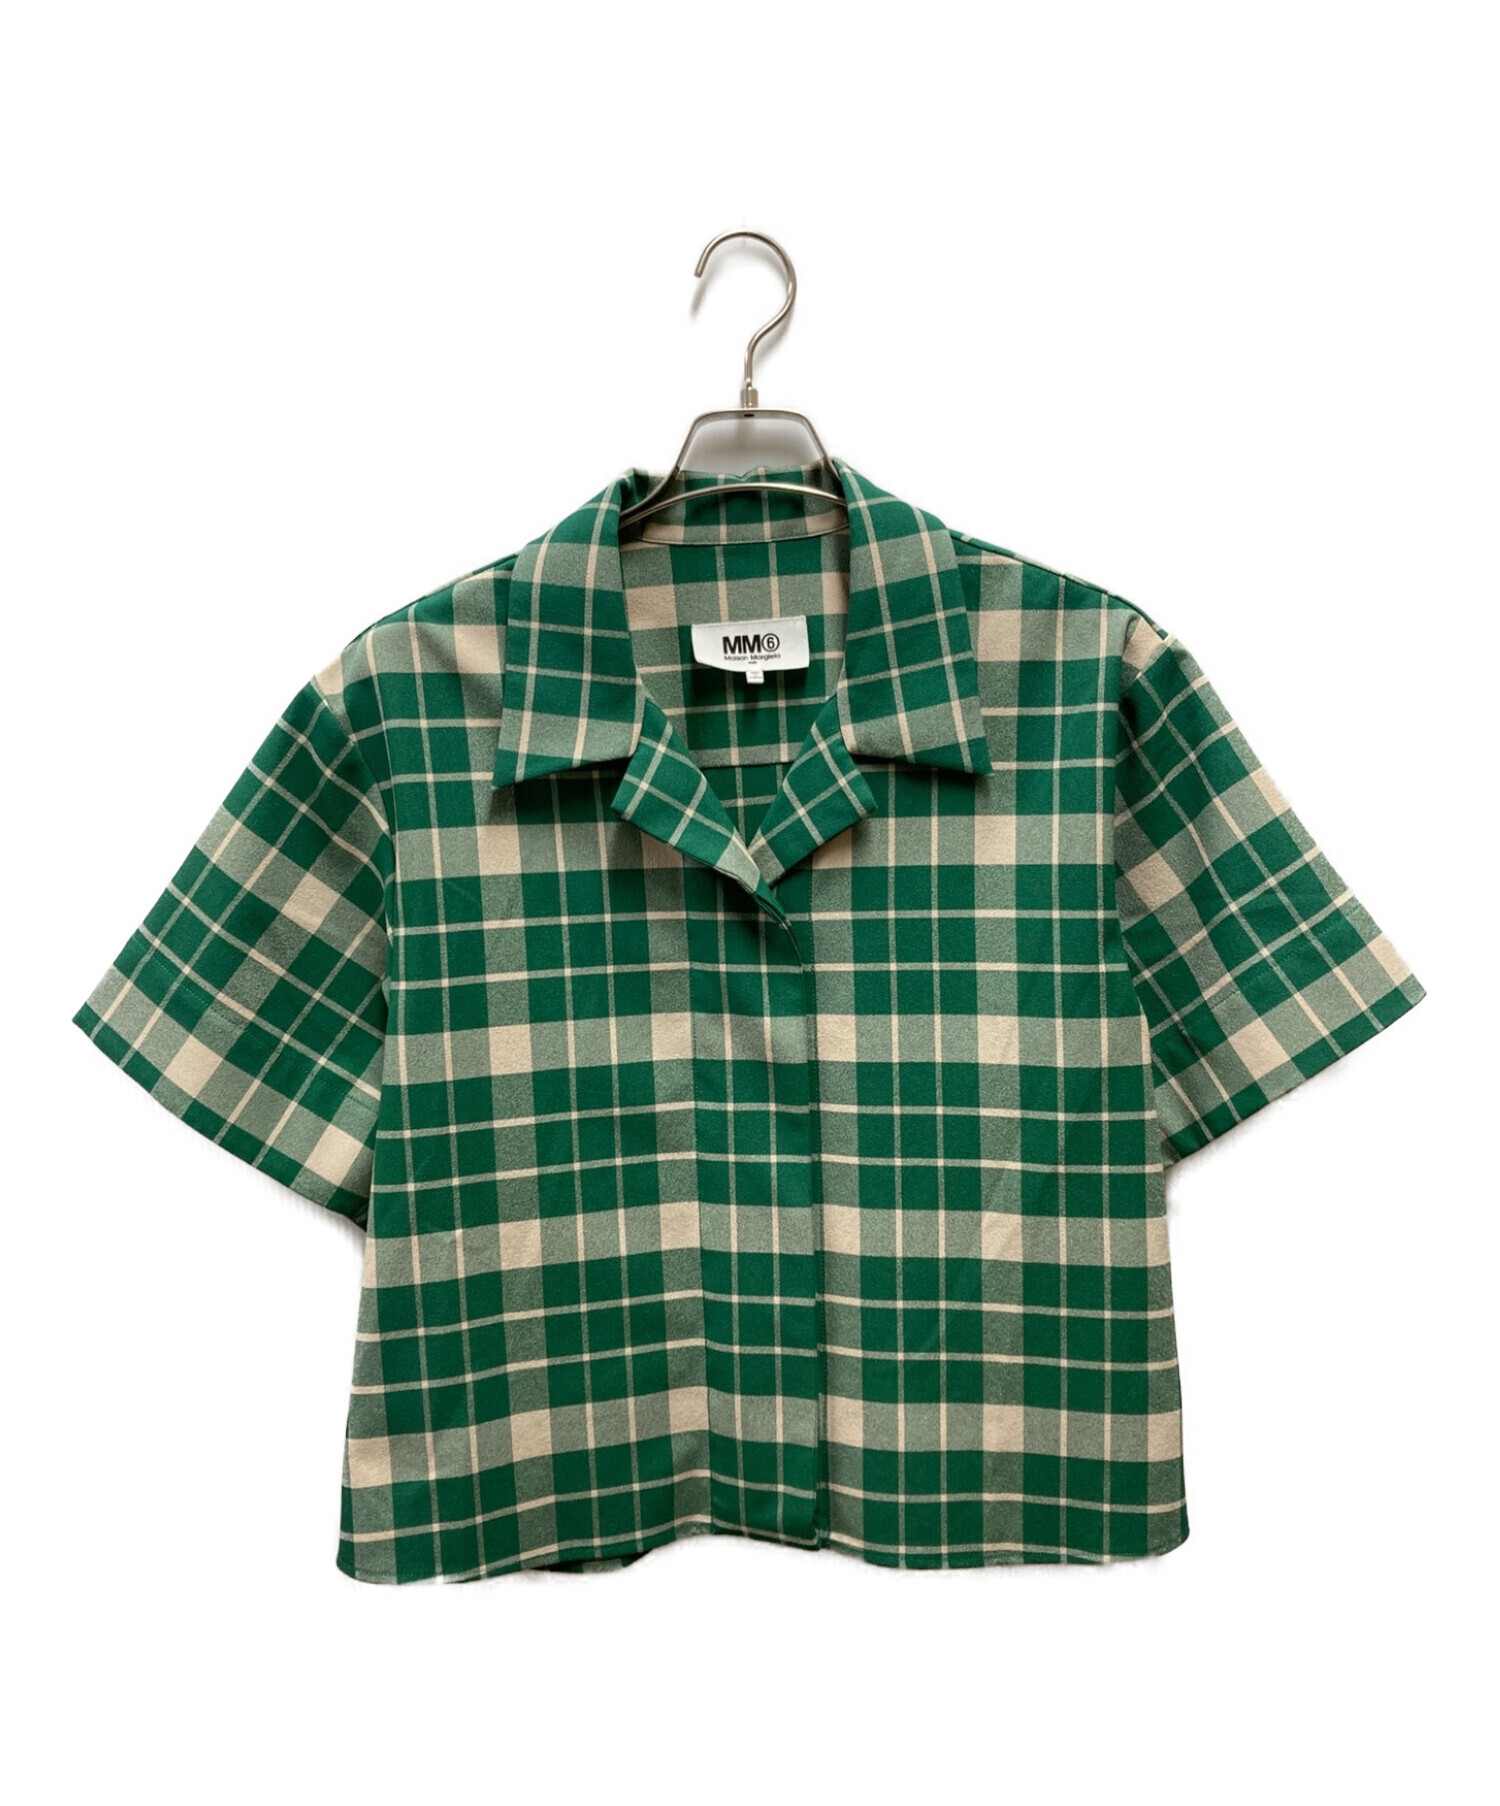 日本正規代理店品 シンゾーン SHINZONE ネルシャツ シャツ チェック